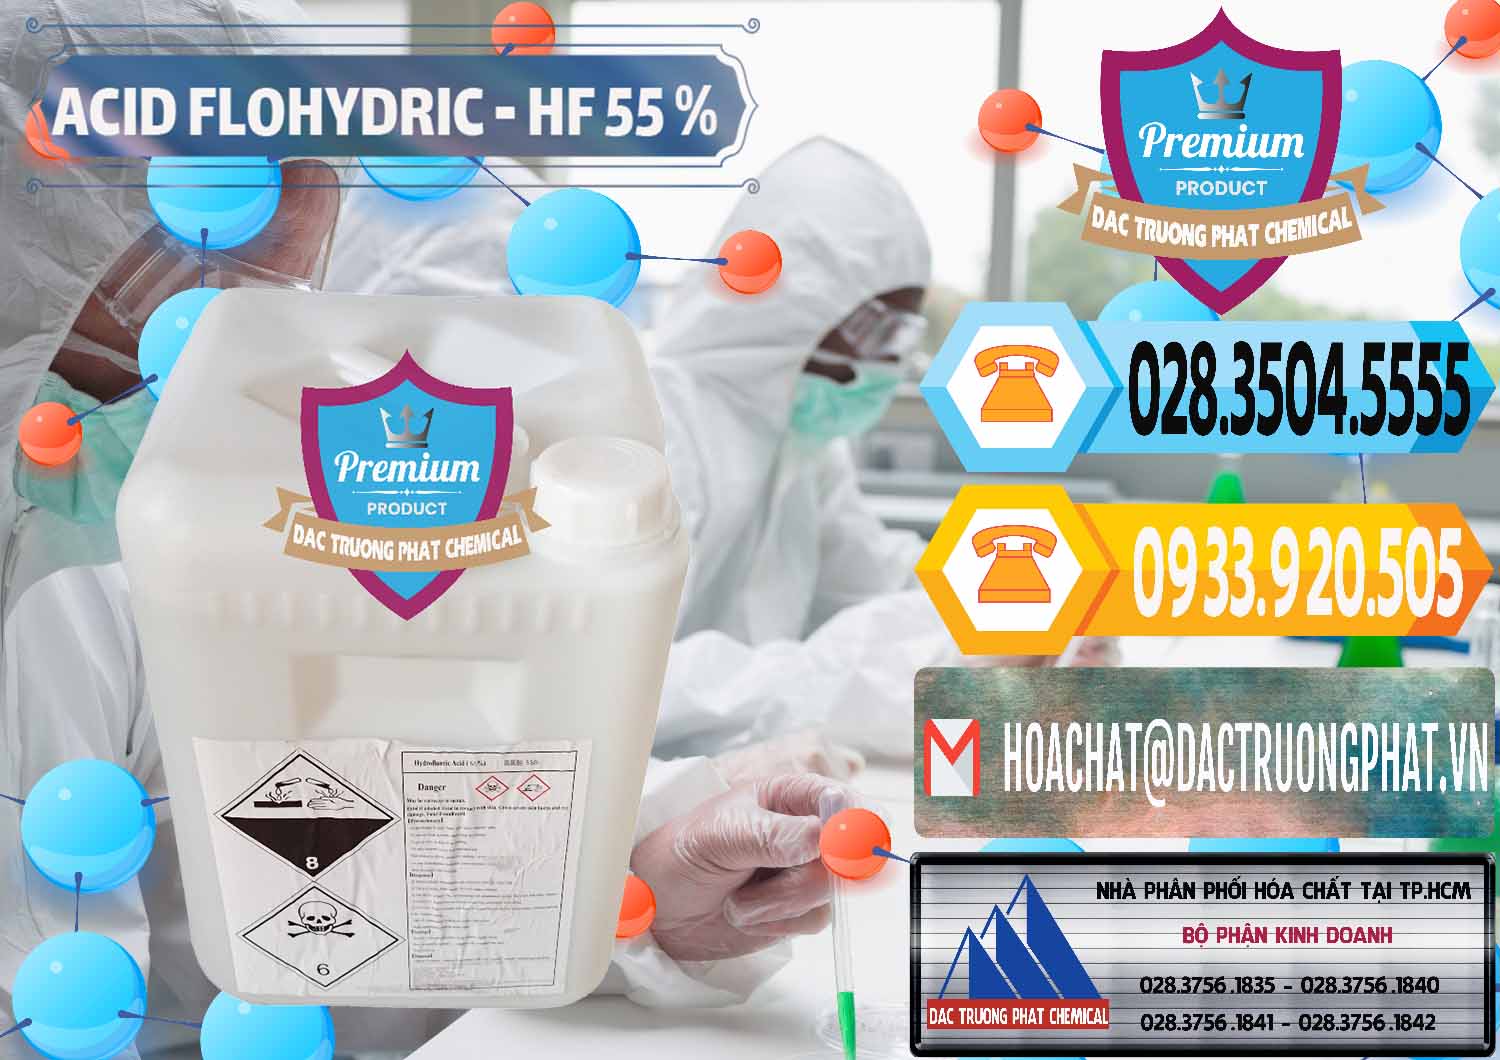 Đơn vị chuyên cung cấp - bán Axit HF - Acid HF 55% Can Trắng Trung Quốc China - 0079 - Nhà cung cấp & kinh doanh hóa chất tại TP.HCM - hoachattayrua.net